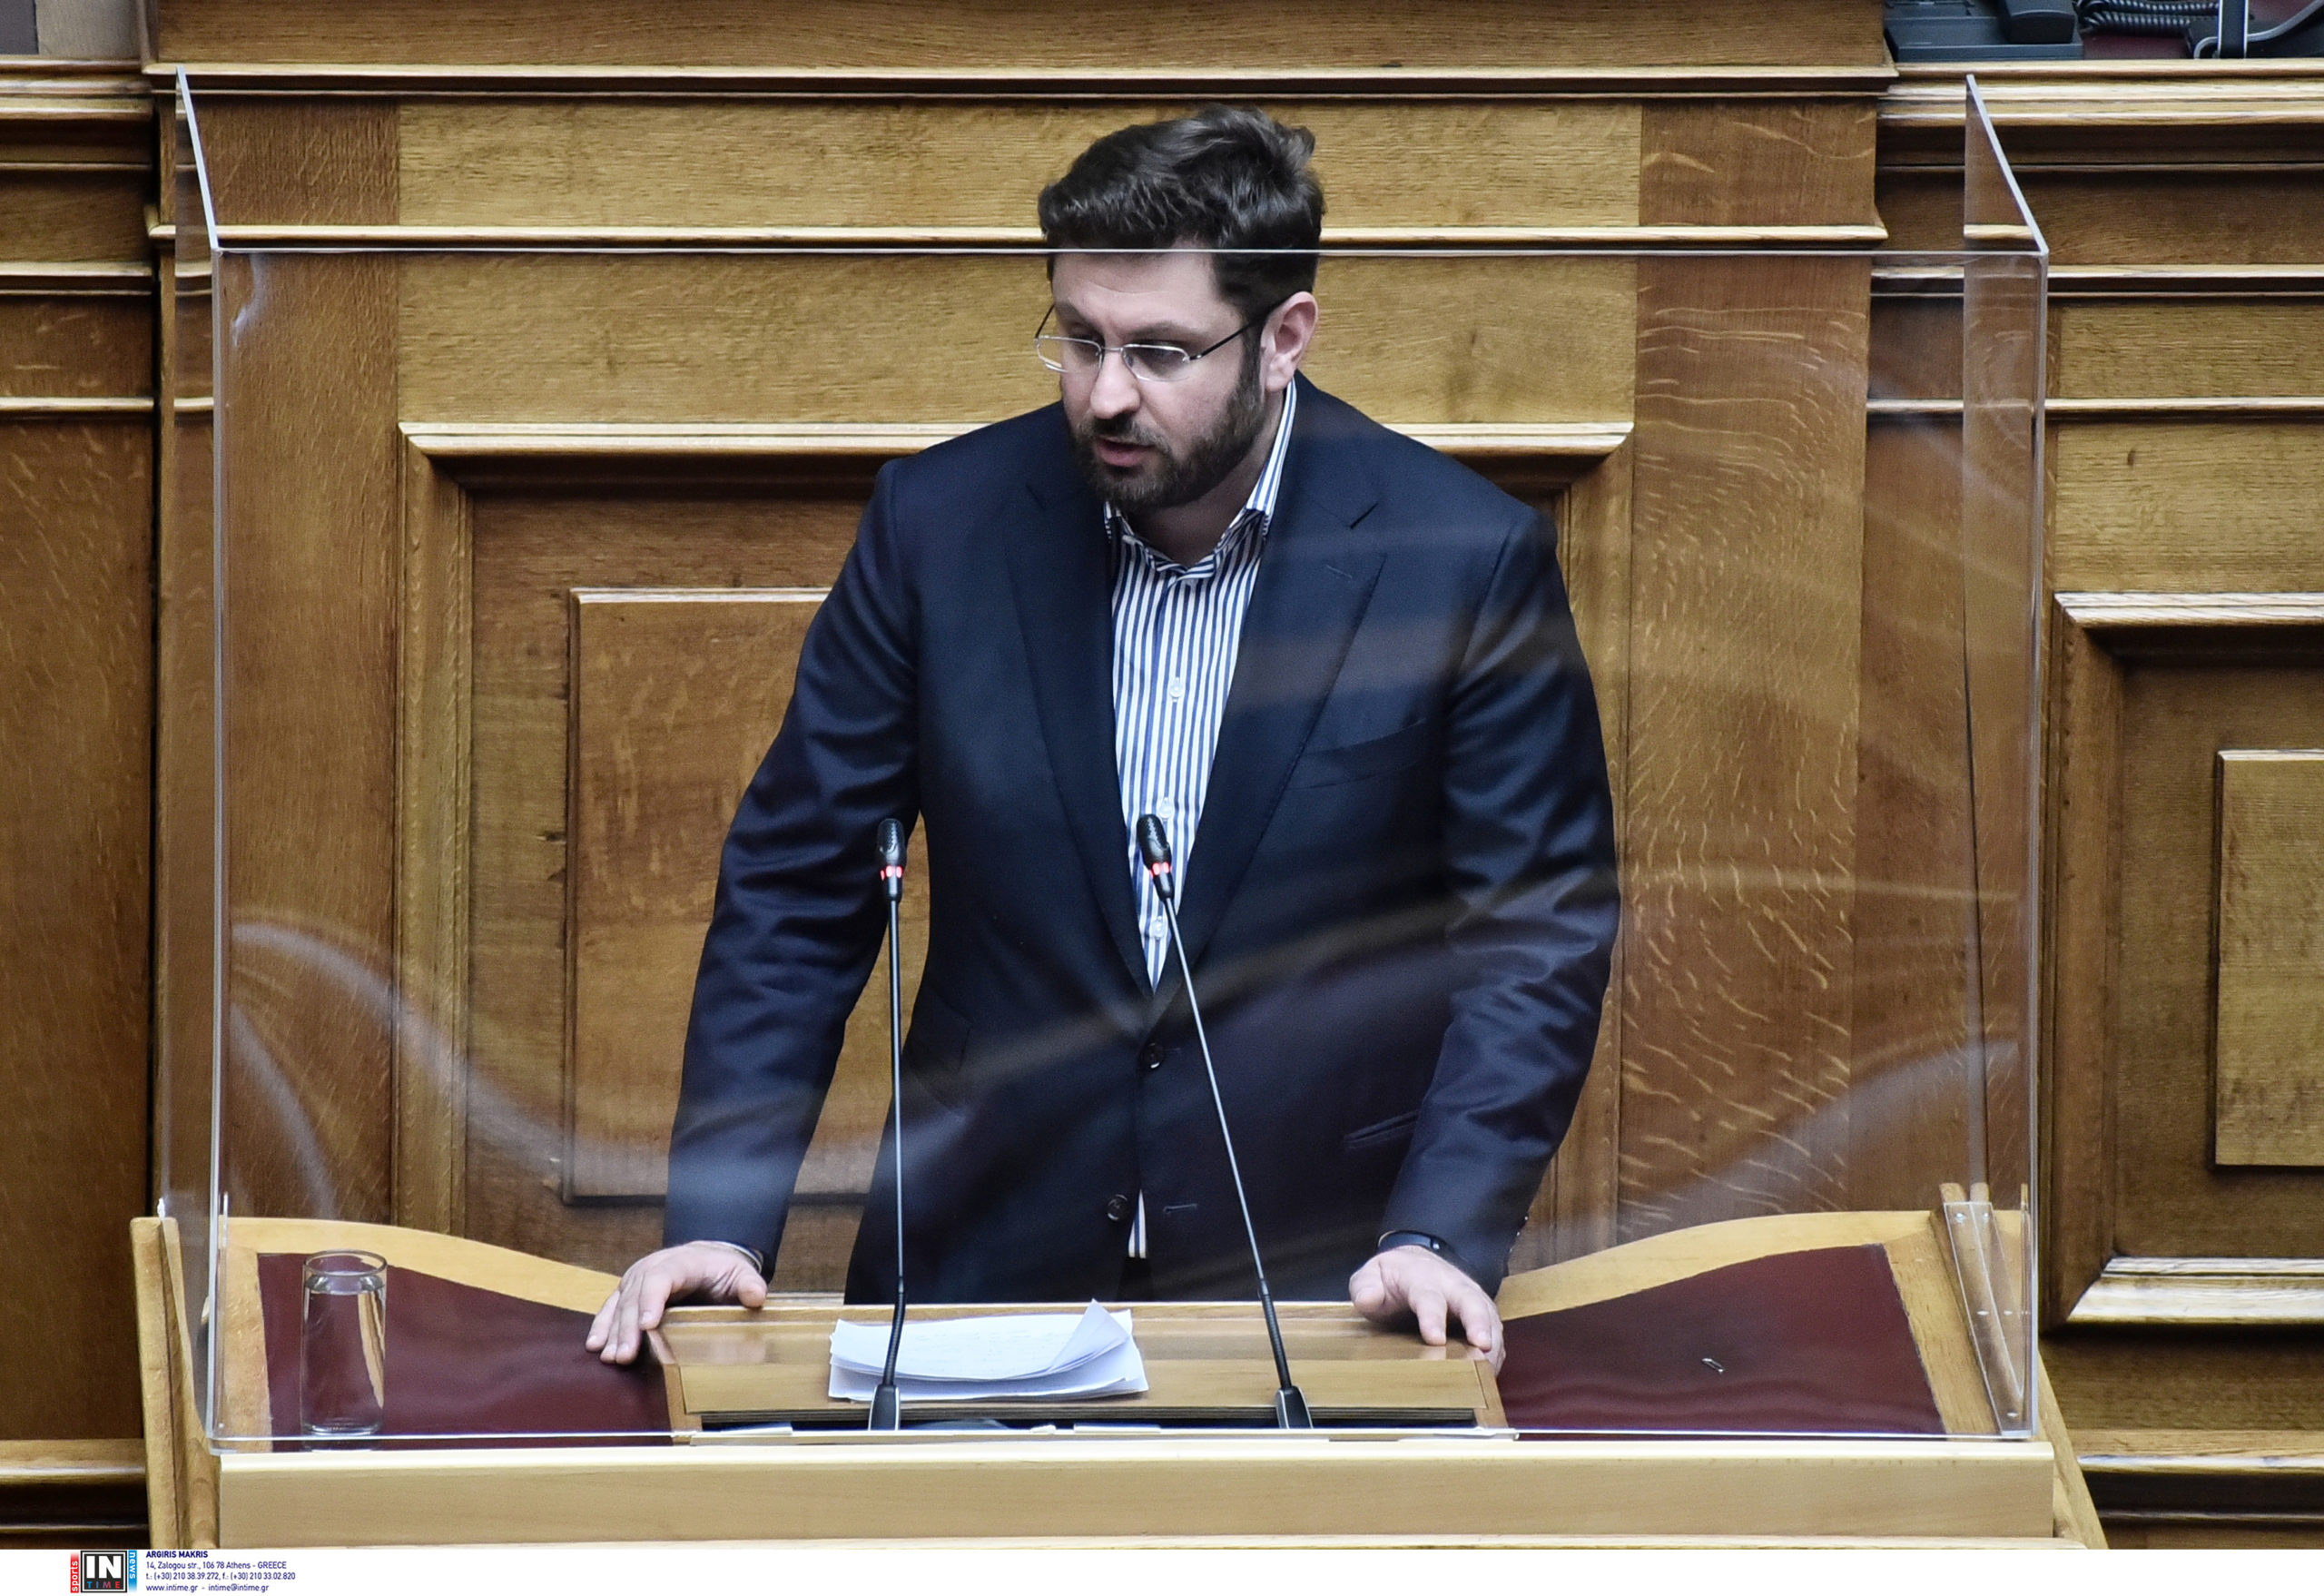 Ζαχαριάδης στον Realfm 97,8: Η χώρα αυτή τη στιγμή δεν έχει κυβέρνηση, έχει μόνο υποψήφιους βουλευτές